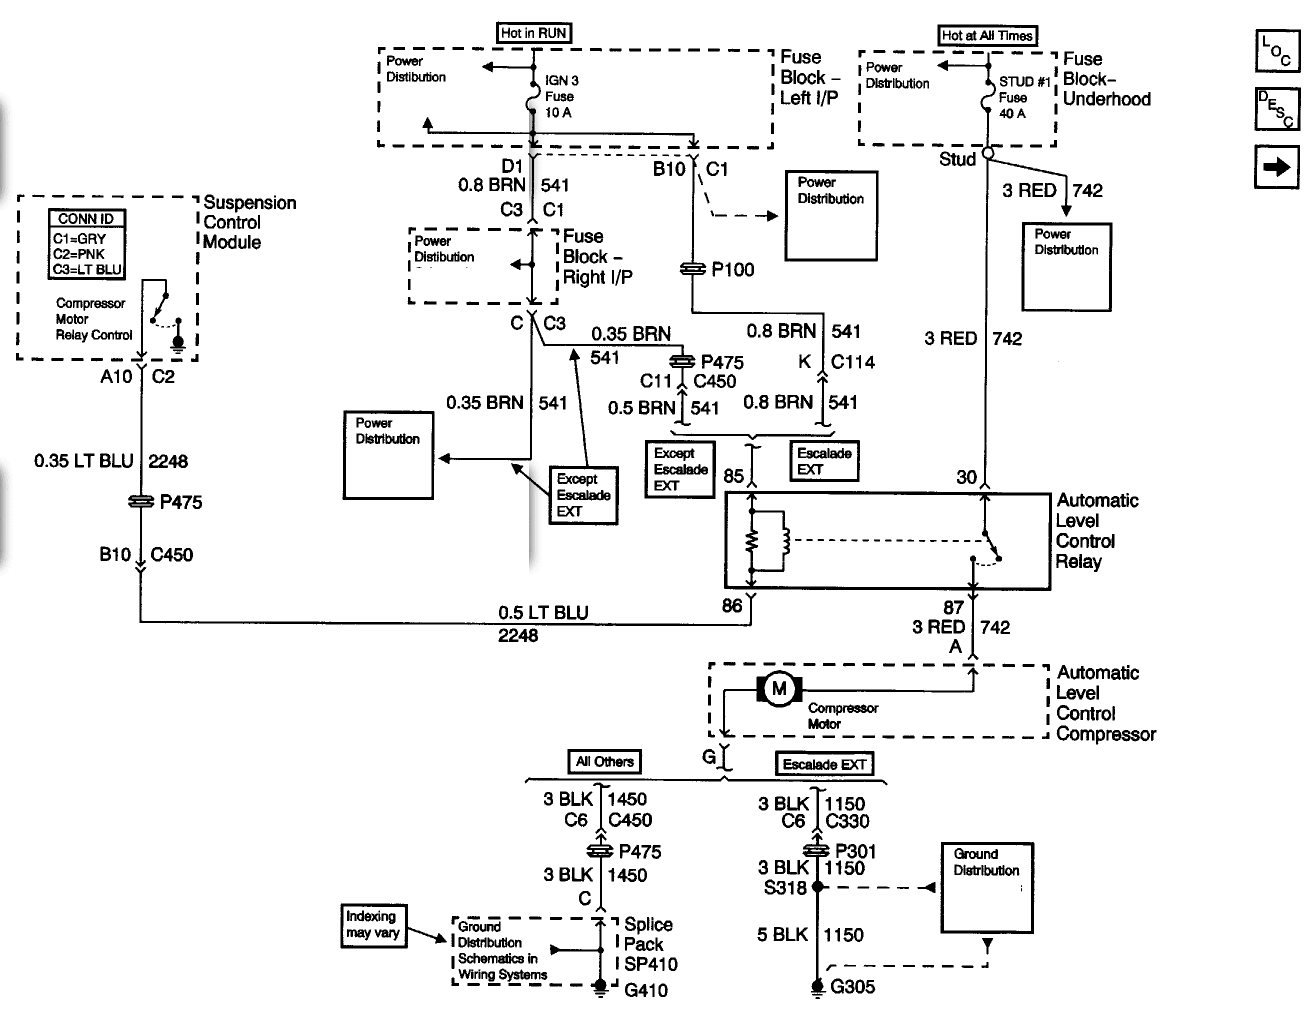 Denali Wiring Diagram - Wiring Diagram